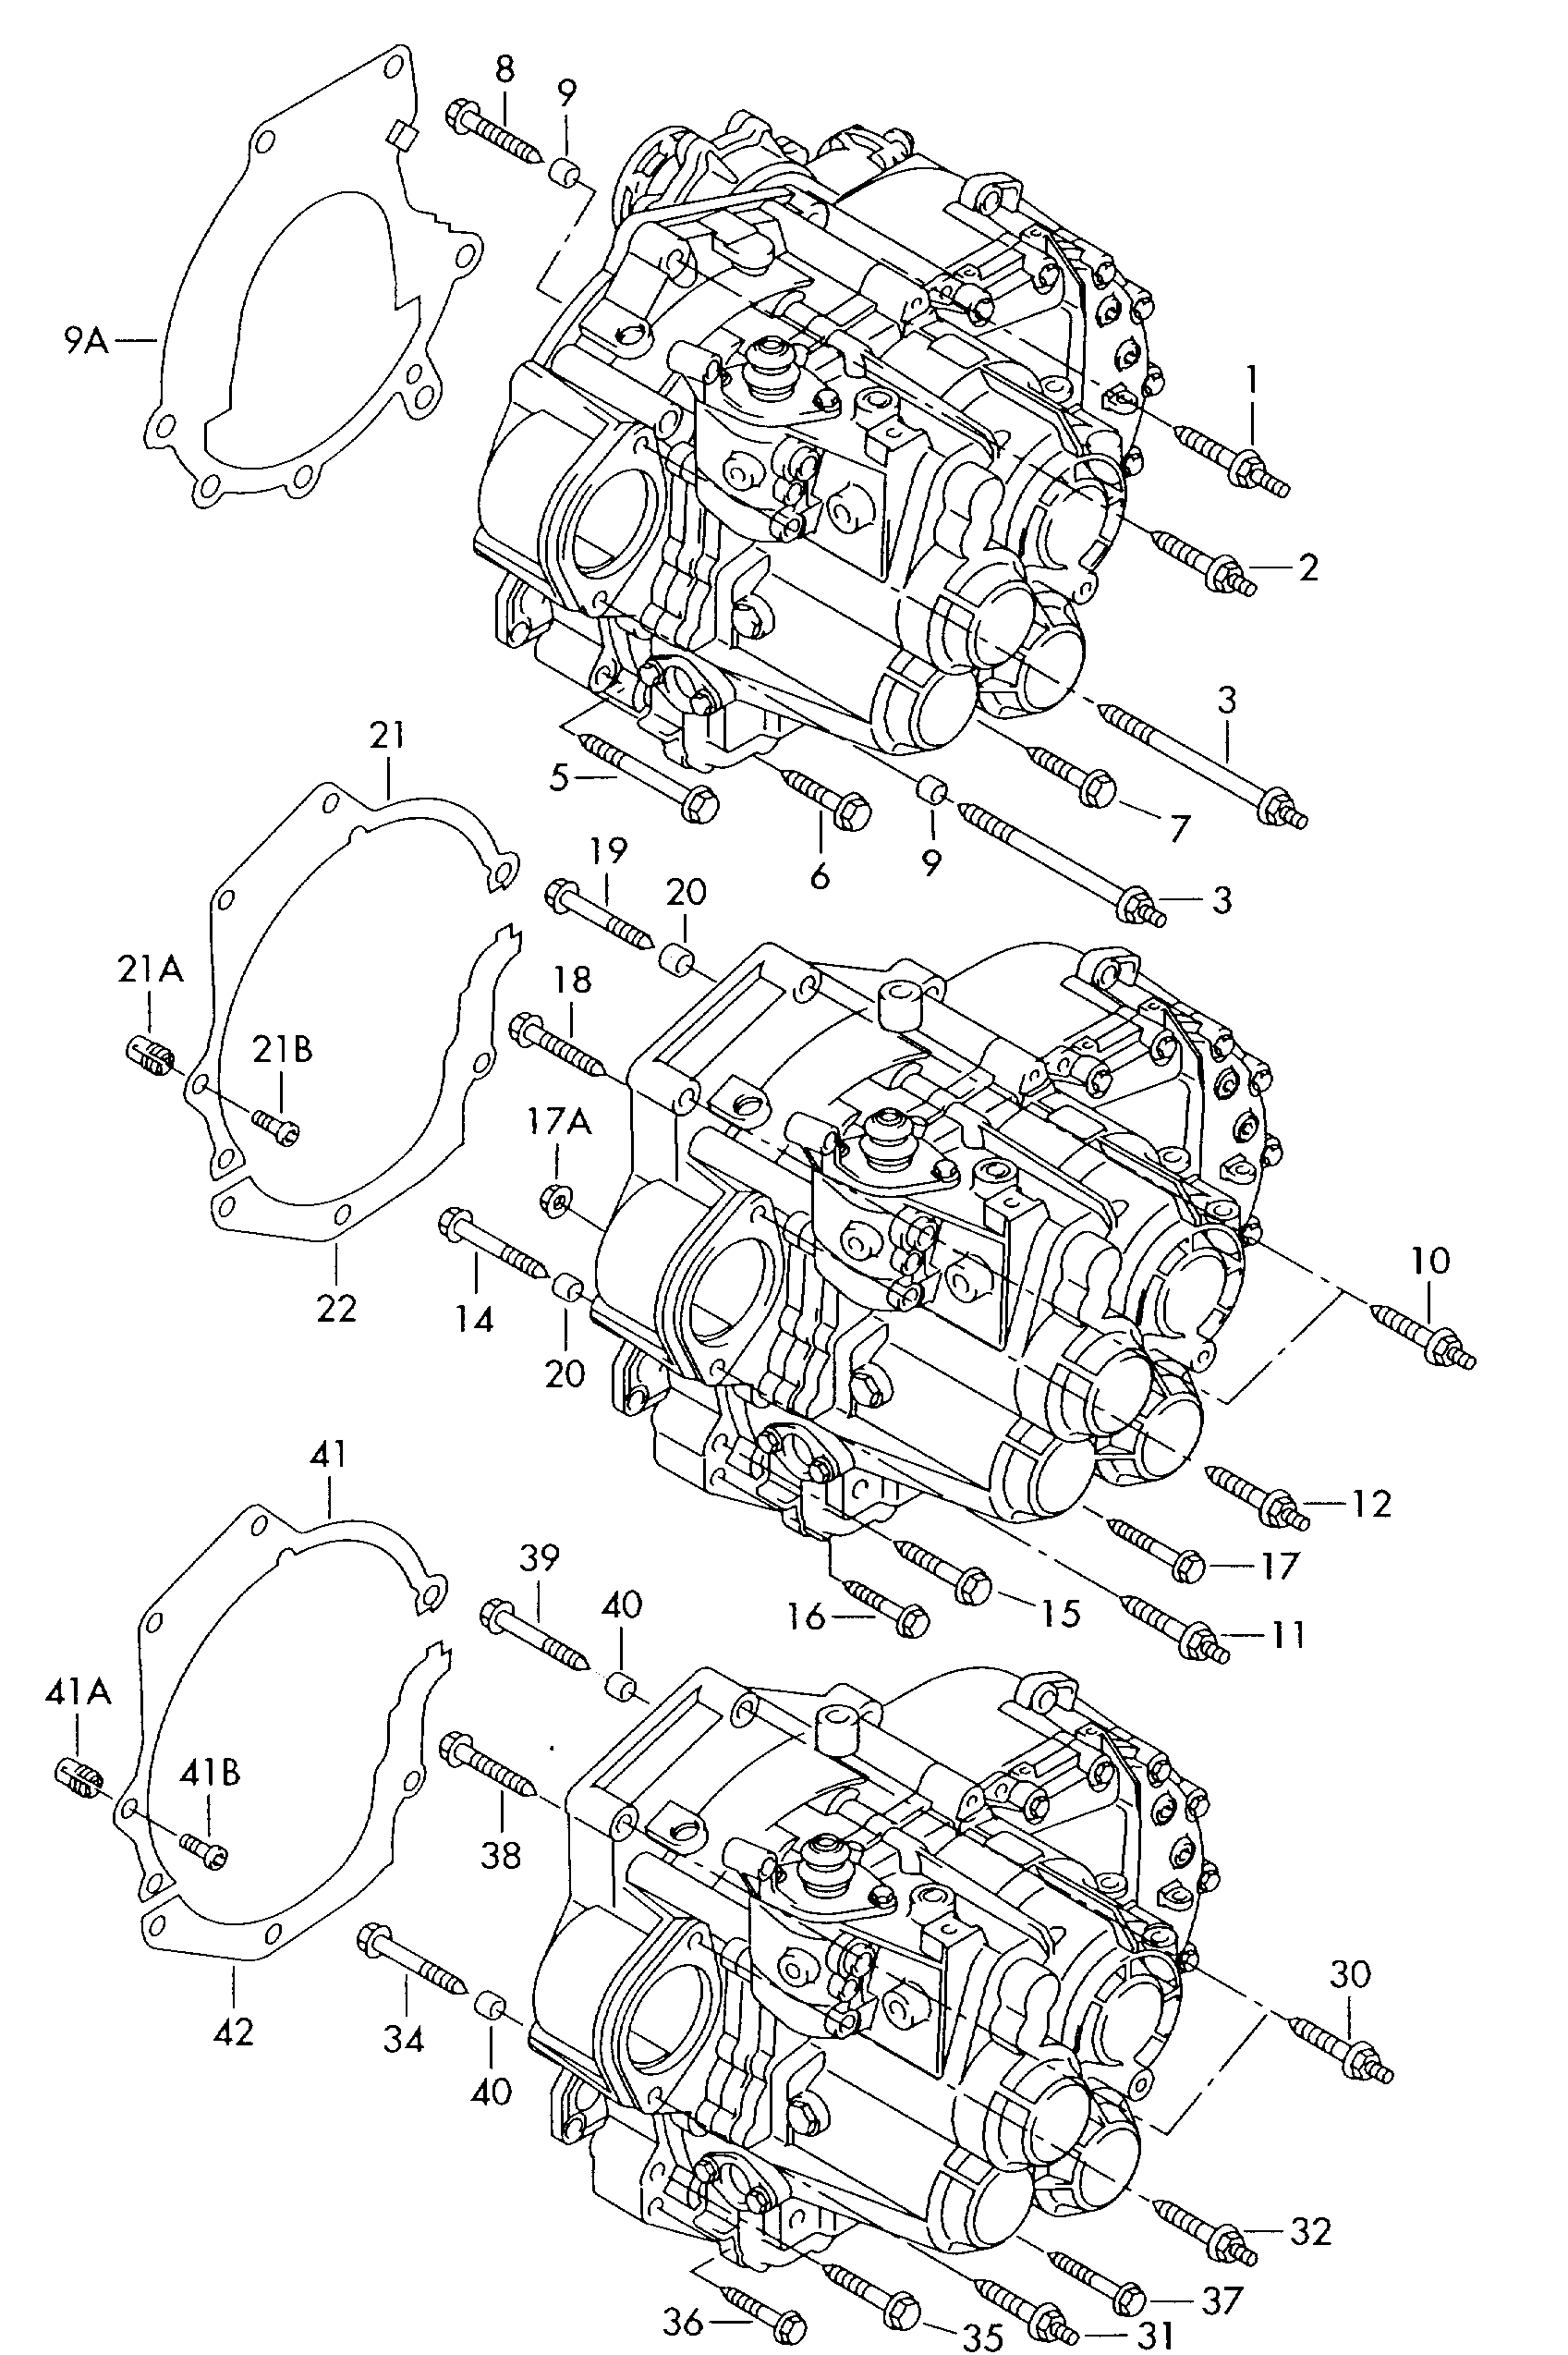 Befestigungsteile für Motor<br>und Getriebefür 6-Gang Schaltgetriebe 4-Zylinder - Octavia - oct